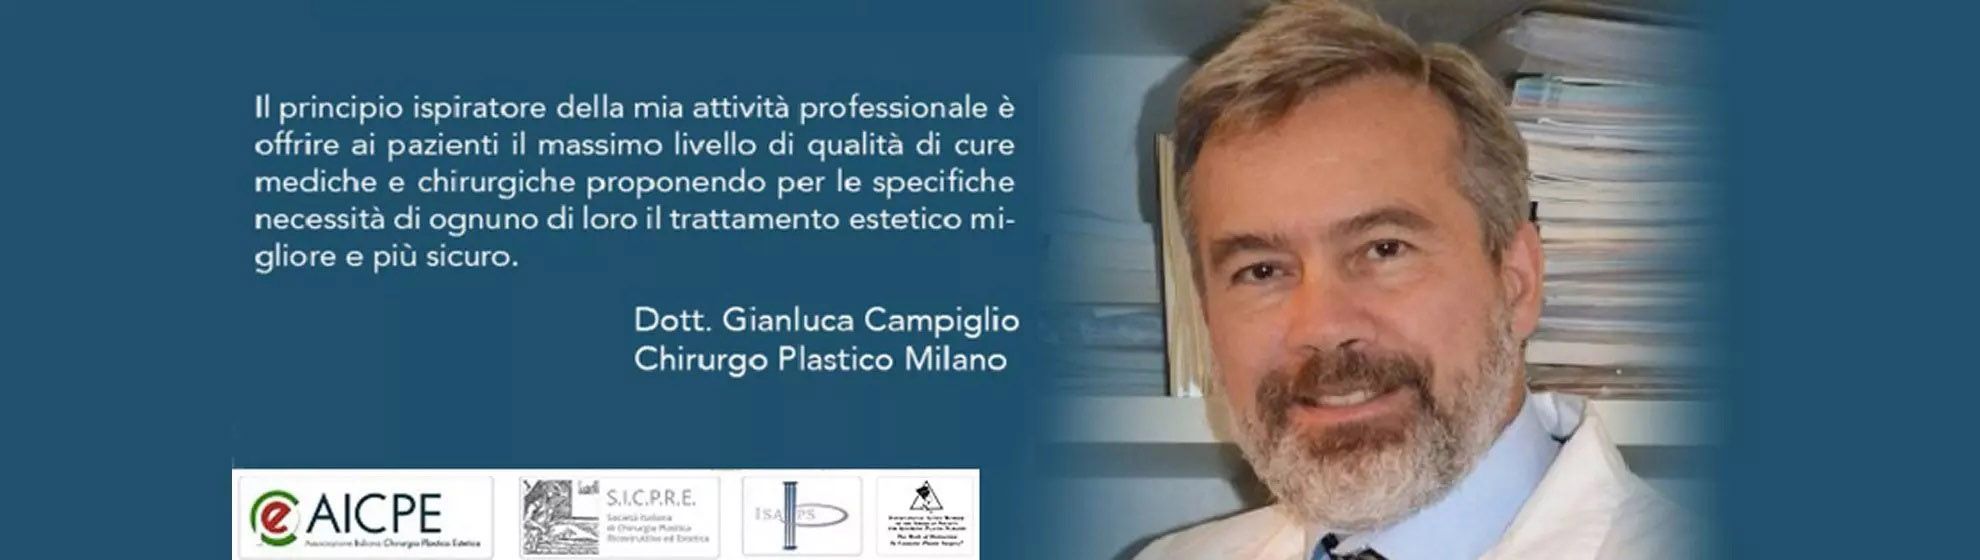 Dott. Gianluca Campiglio Medicina Estetica